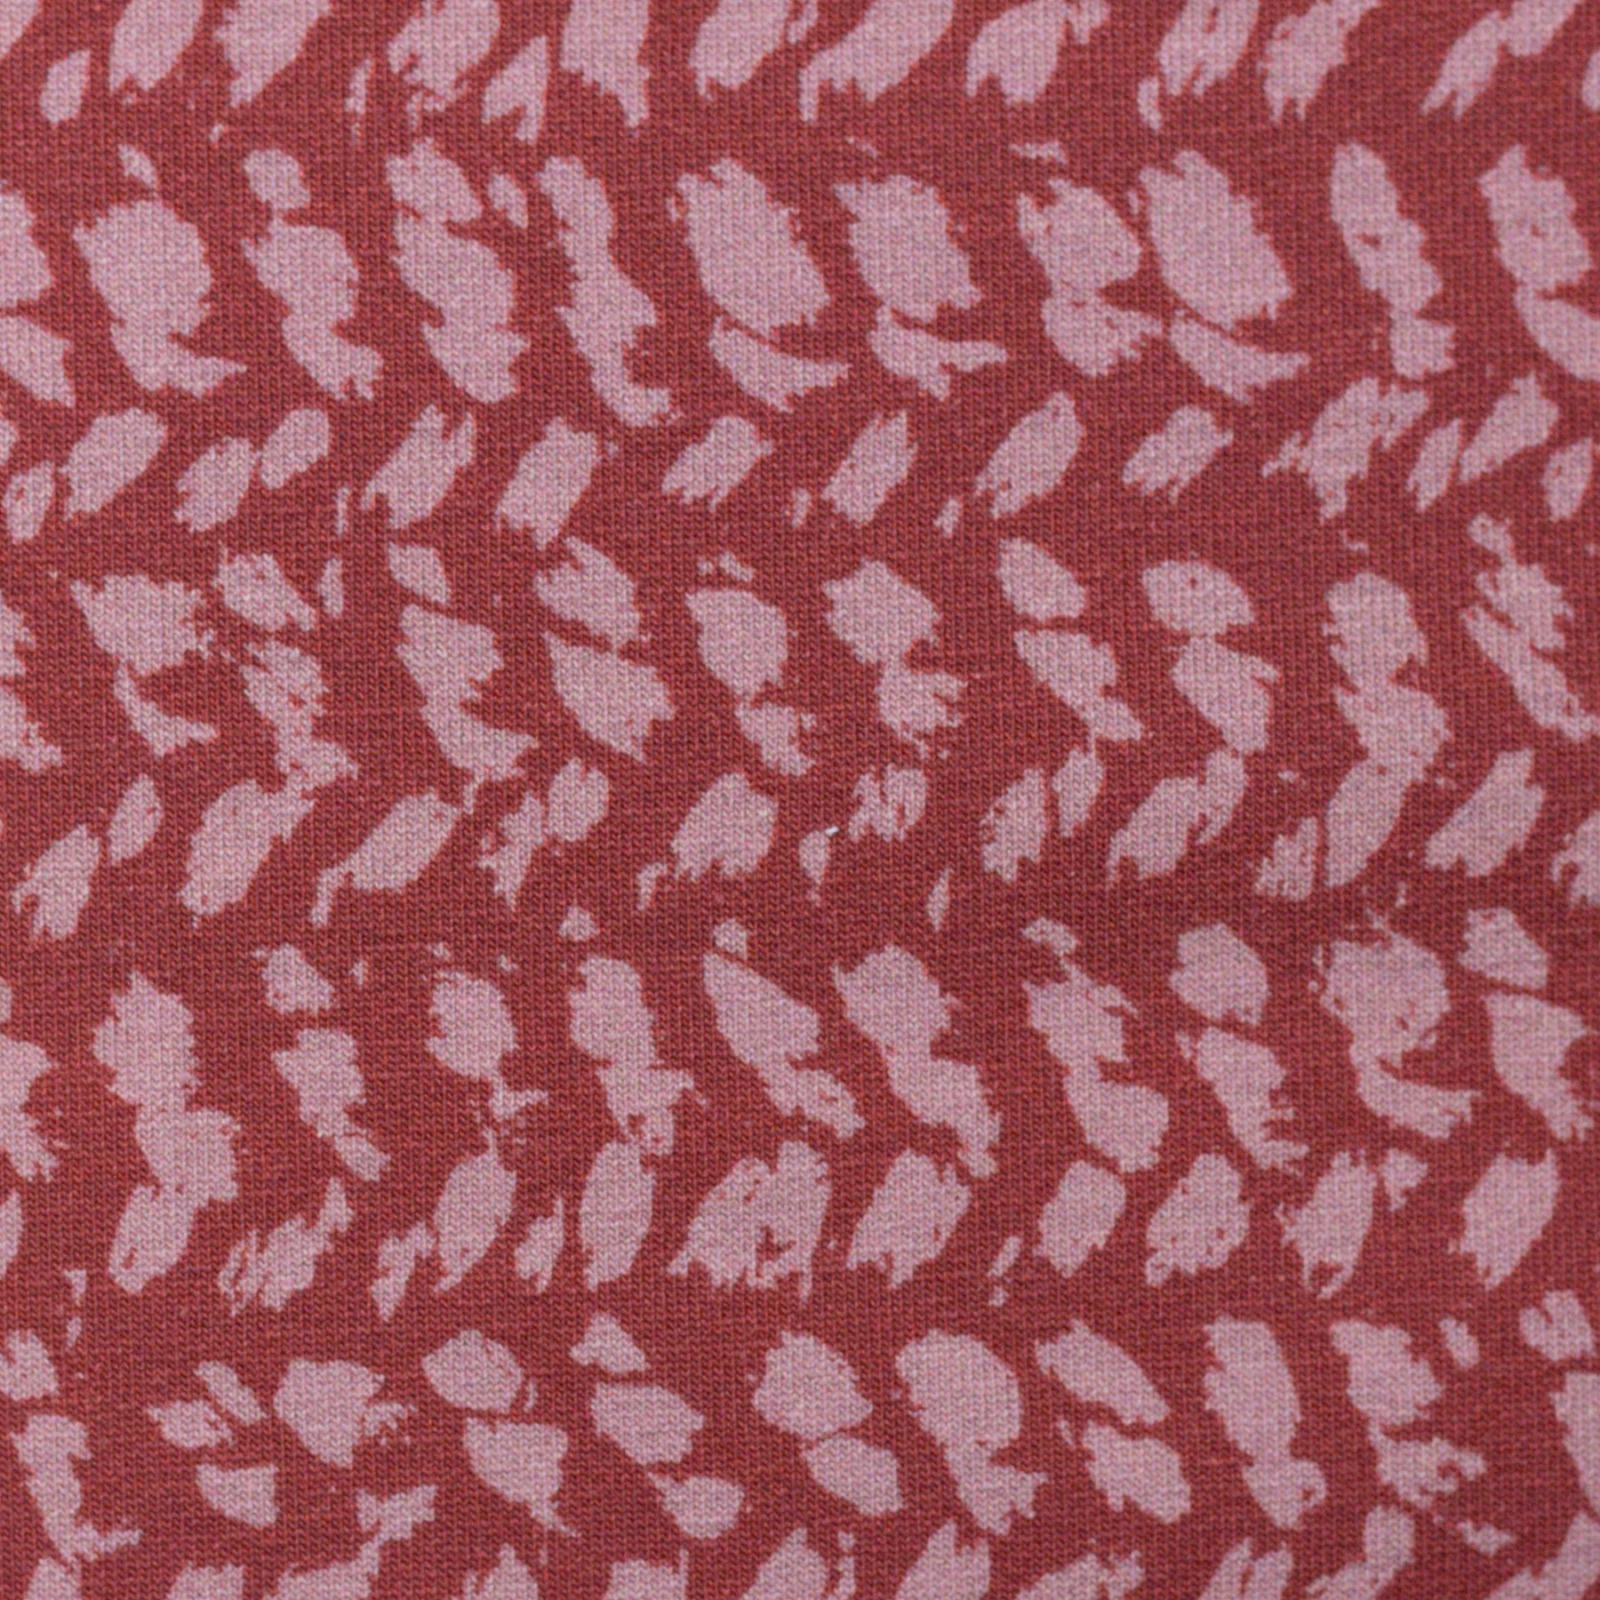 05m Sweat Herringbone Knit by Käselotti dusty Red 4